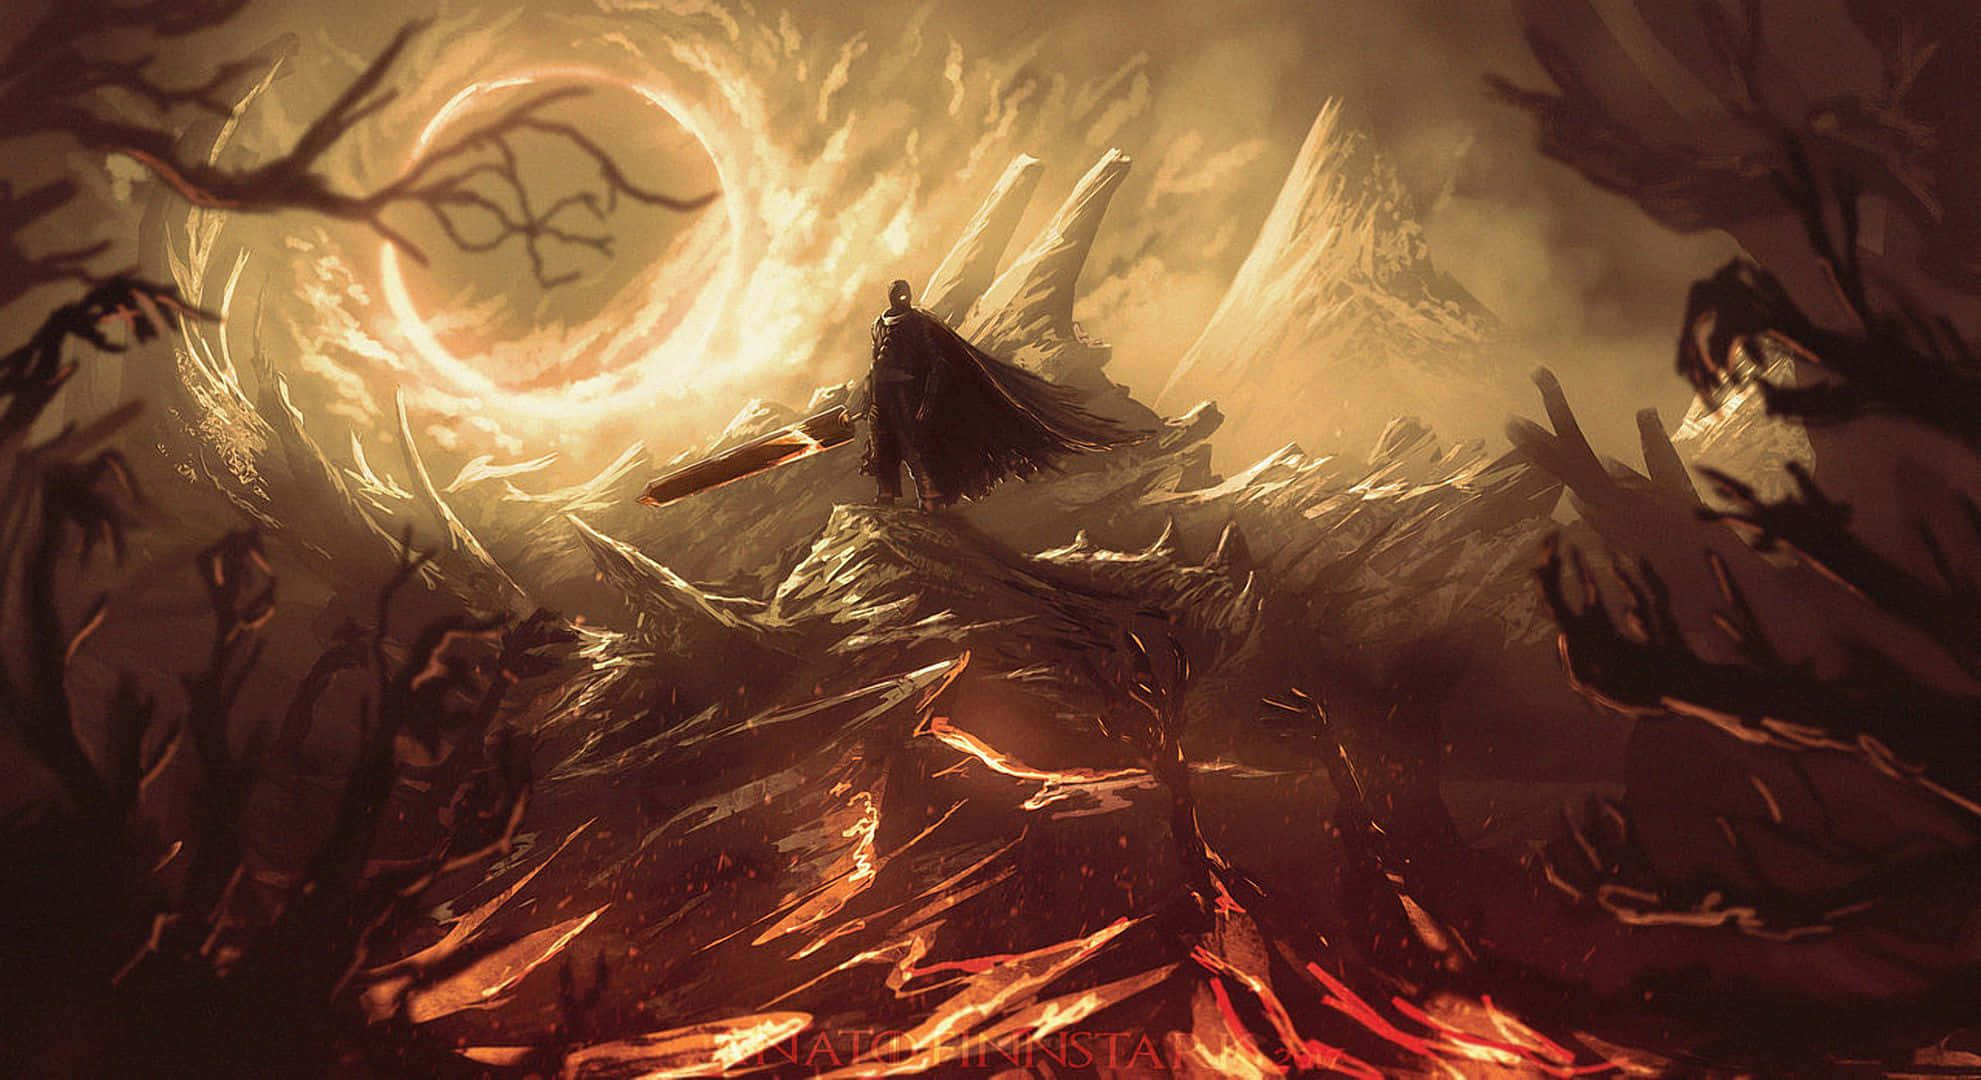 Mighty Warrior Of Berserk - A Dark Fantasy Background